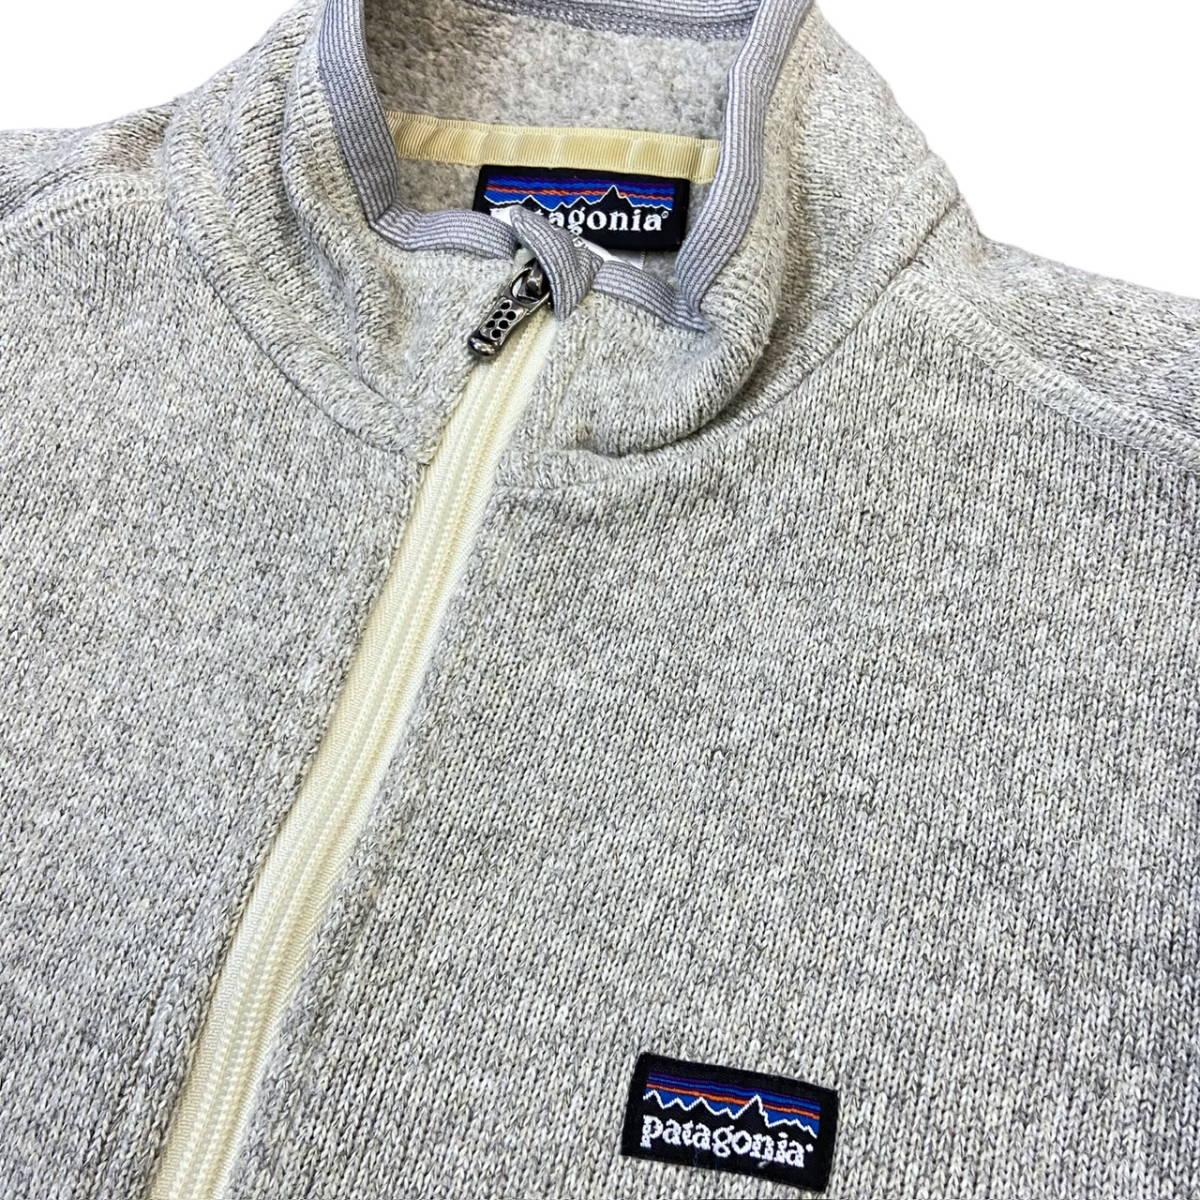 patagonia ベターセーター フリース ジャケット M グレー フルジップ ジップアップ パタゴニア Better Sweater 2017年製 25540_画像2